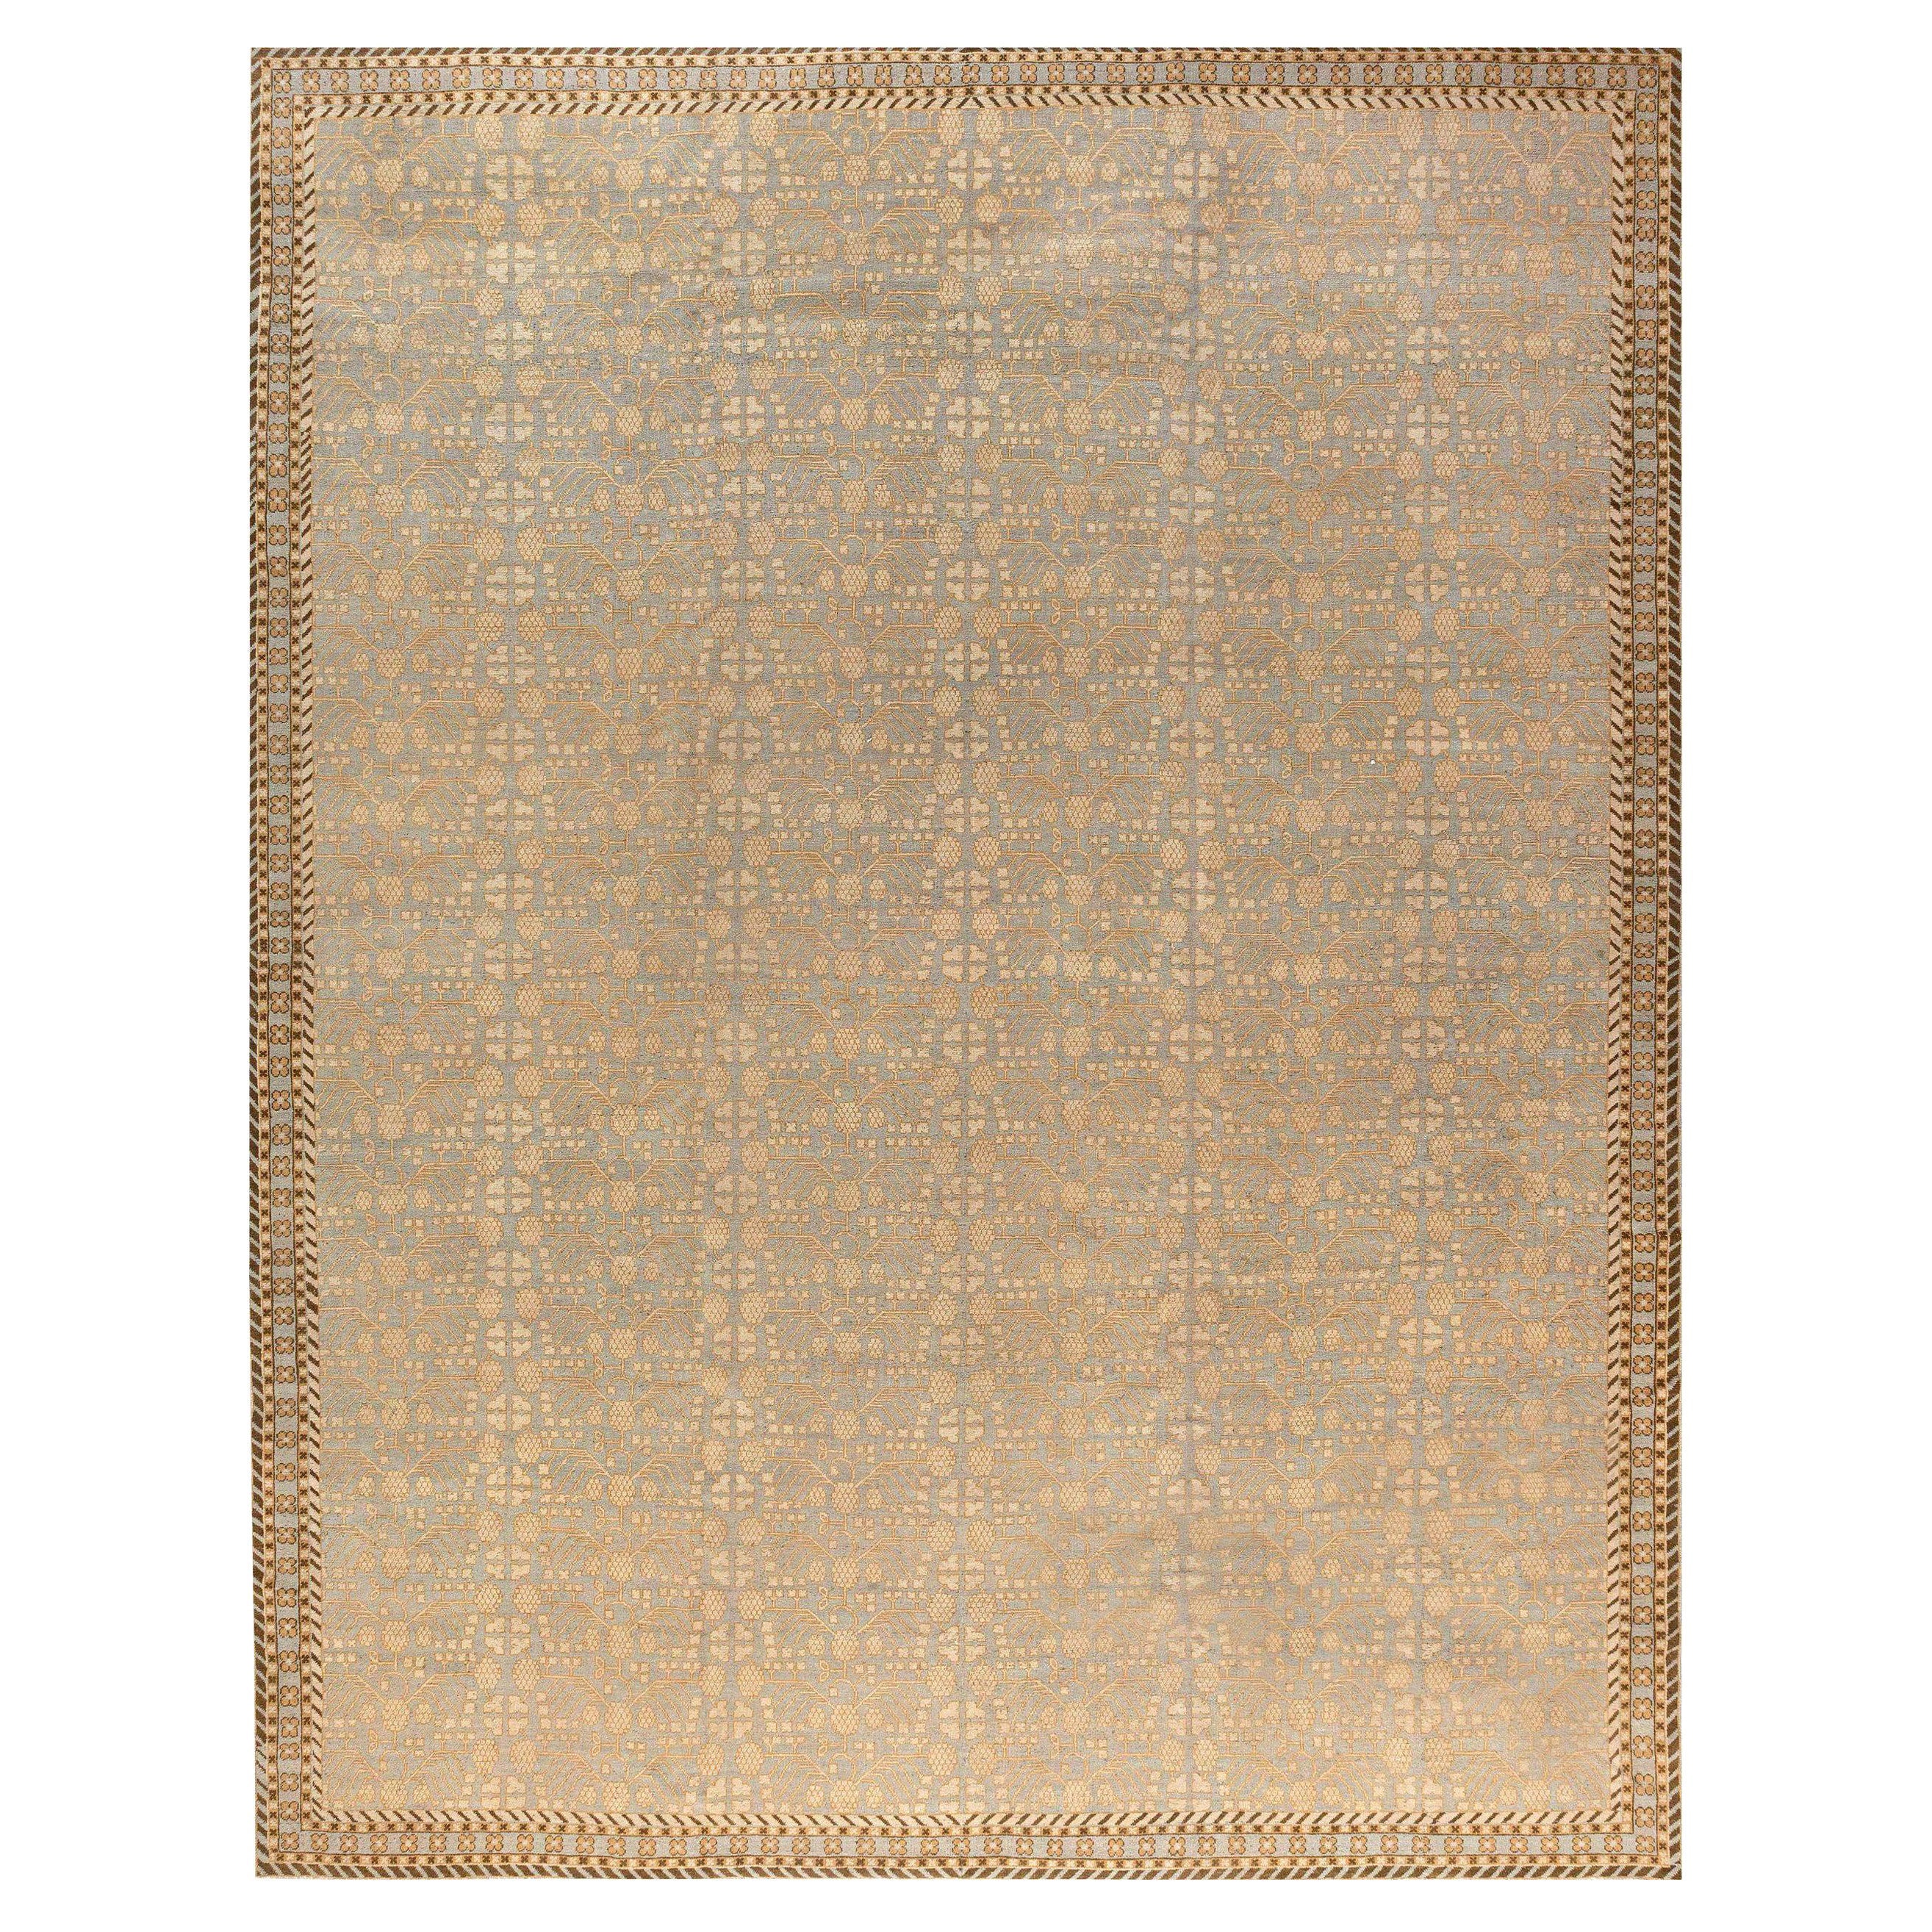 Tapis contemporain en laine Samarkand de Doris Leslie Blau, design traditionnel fait à la main